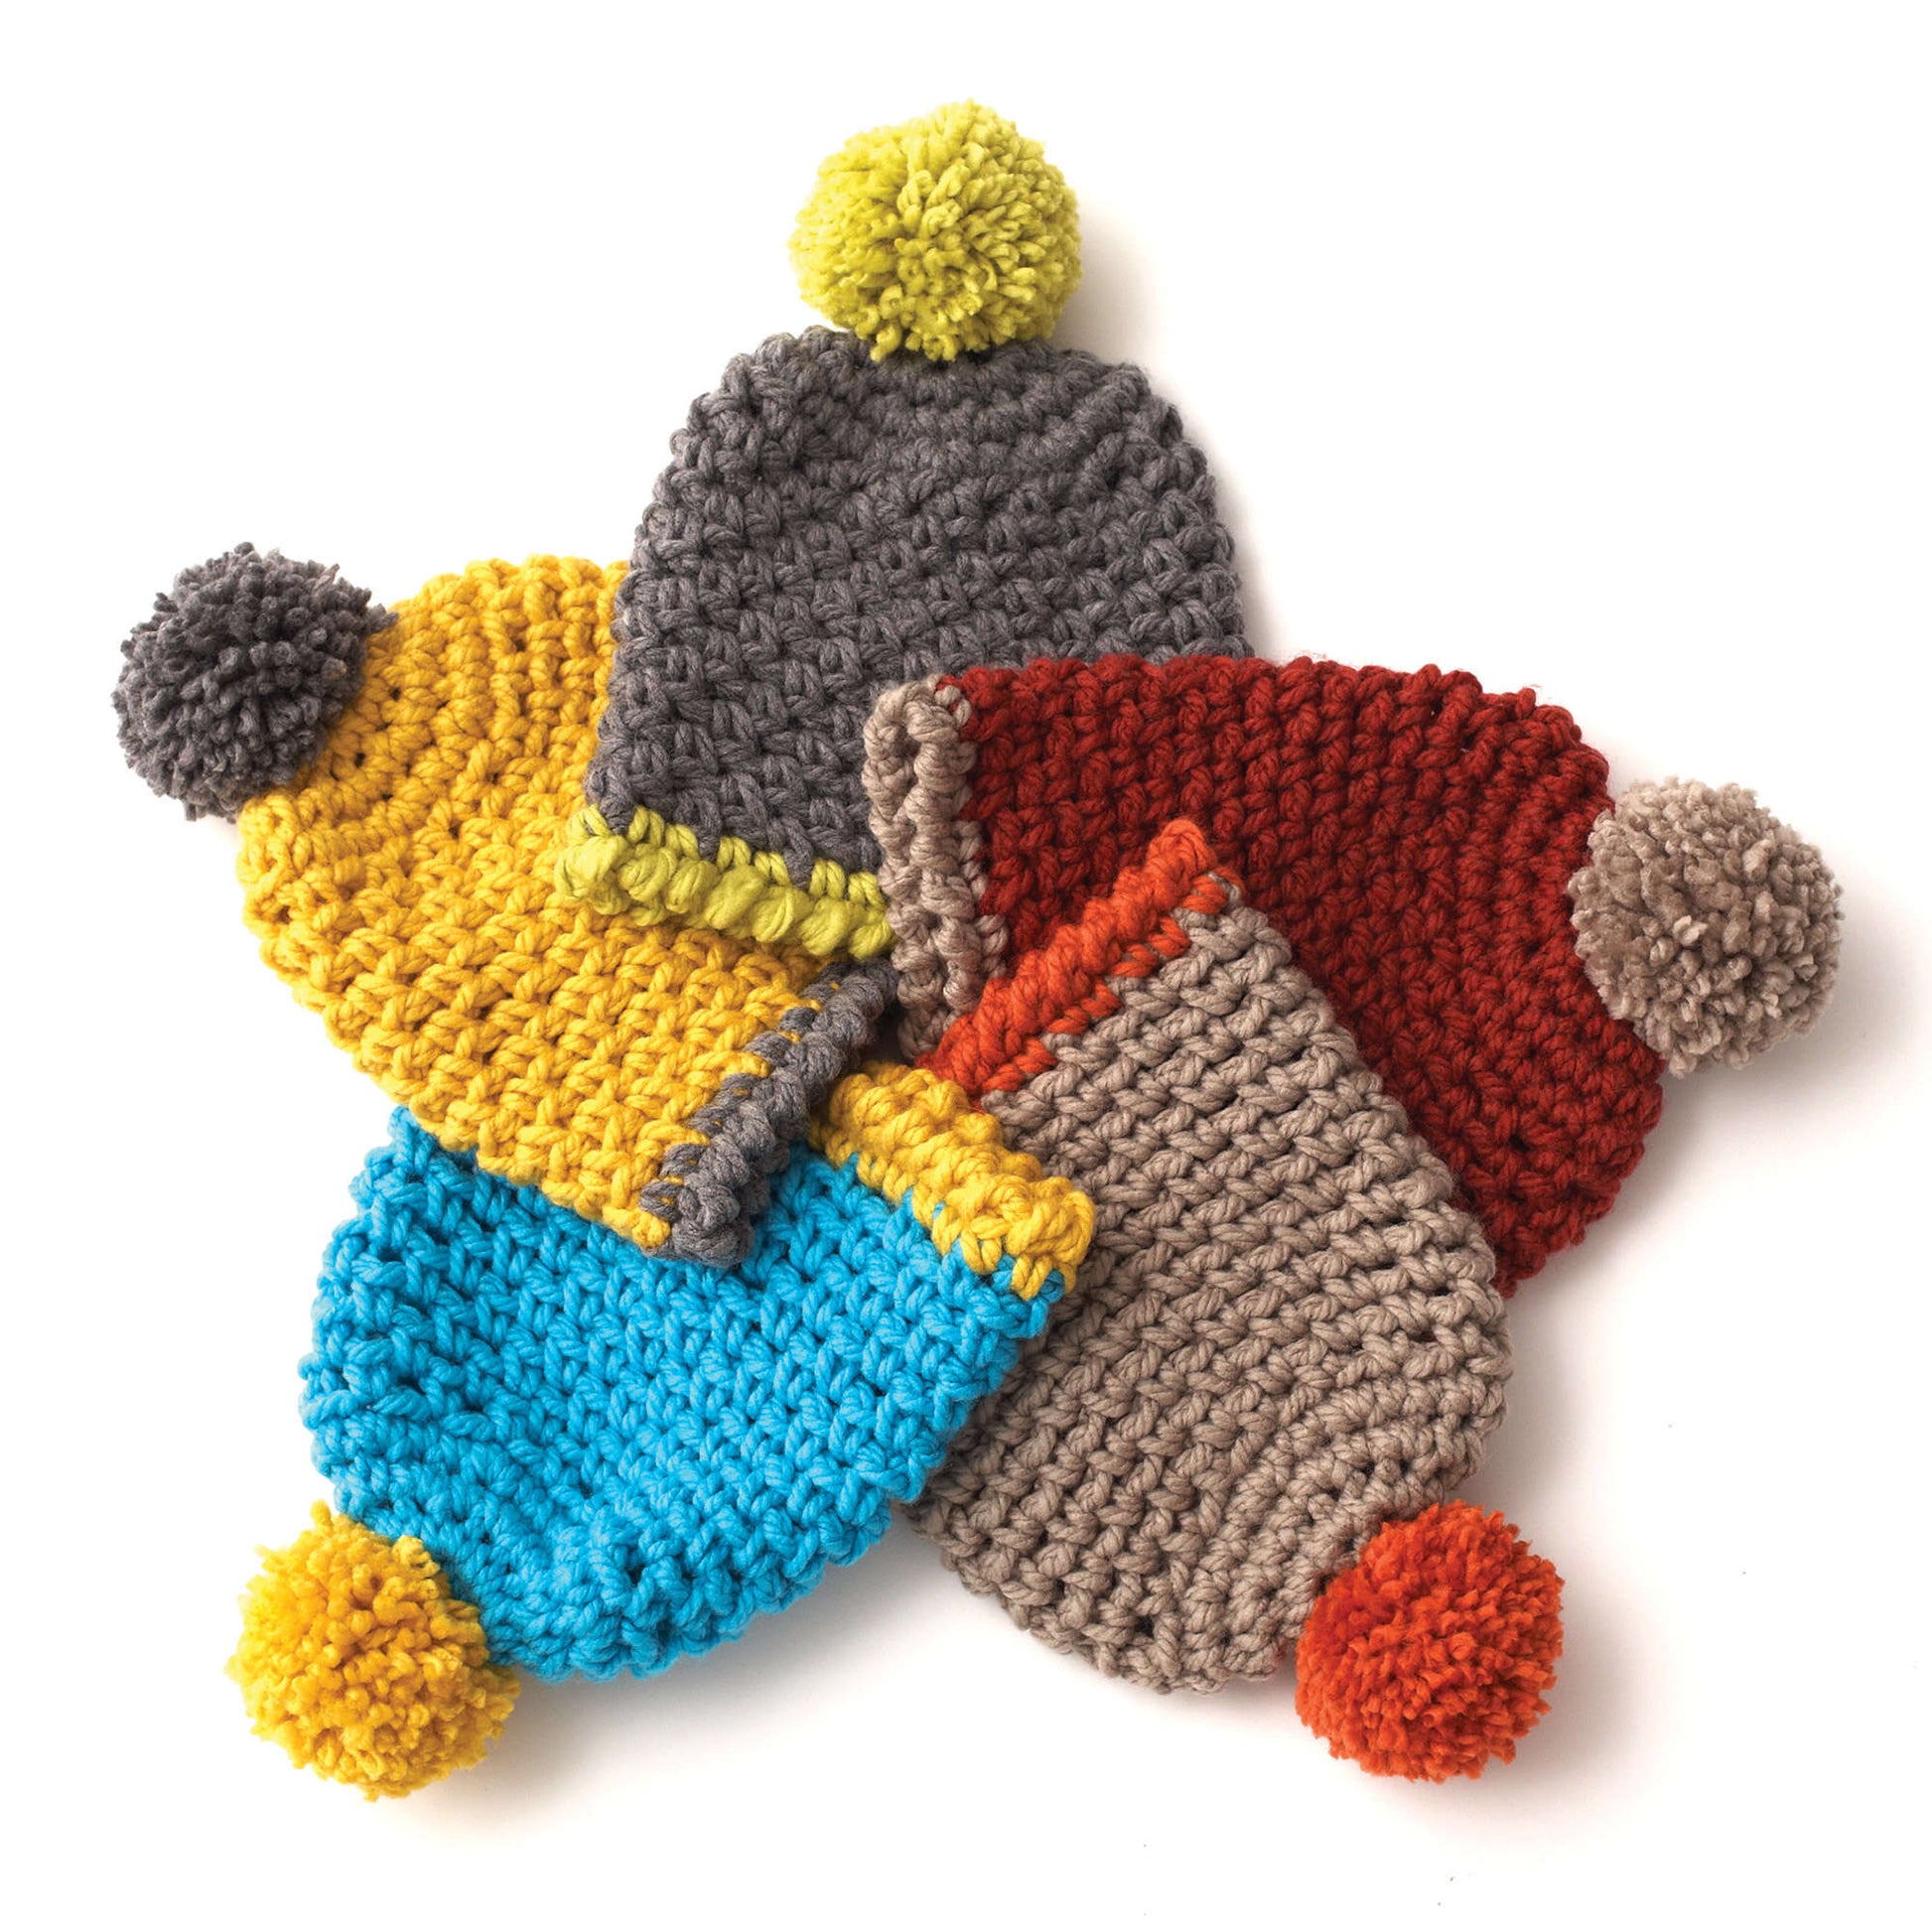 Yarn & Crochet Deals - Easy Crochet Patterns